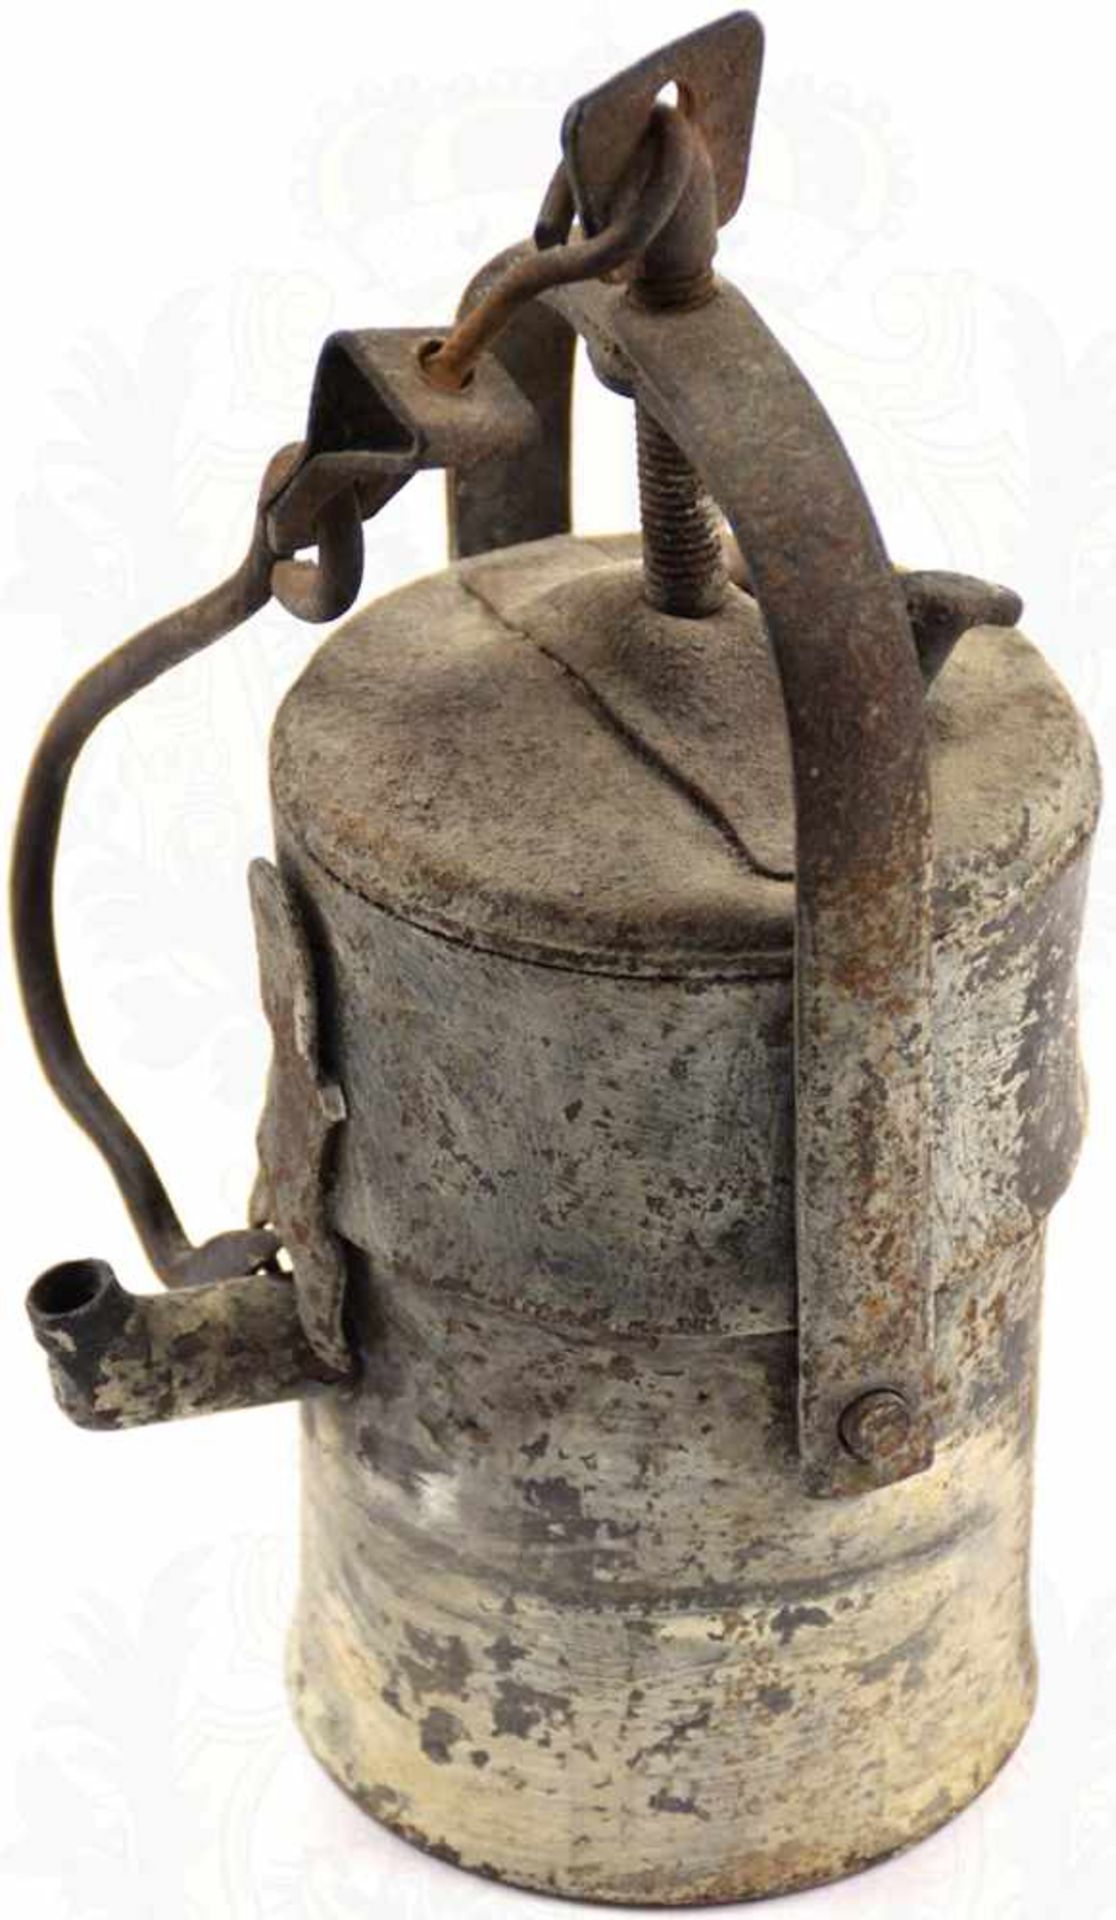 GRUBENLAMPE, komplett aus Eisen gefertigt, Ø 9, H. 22 cm, bewegliche Haken, unkomplett, 1. H. 20. - Image 2 of 2